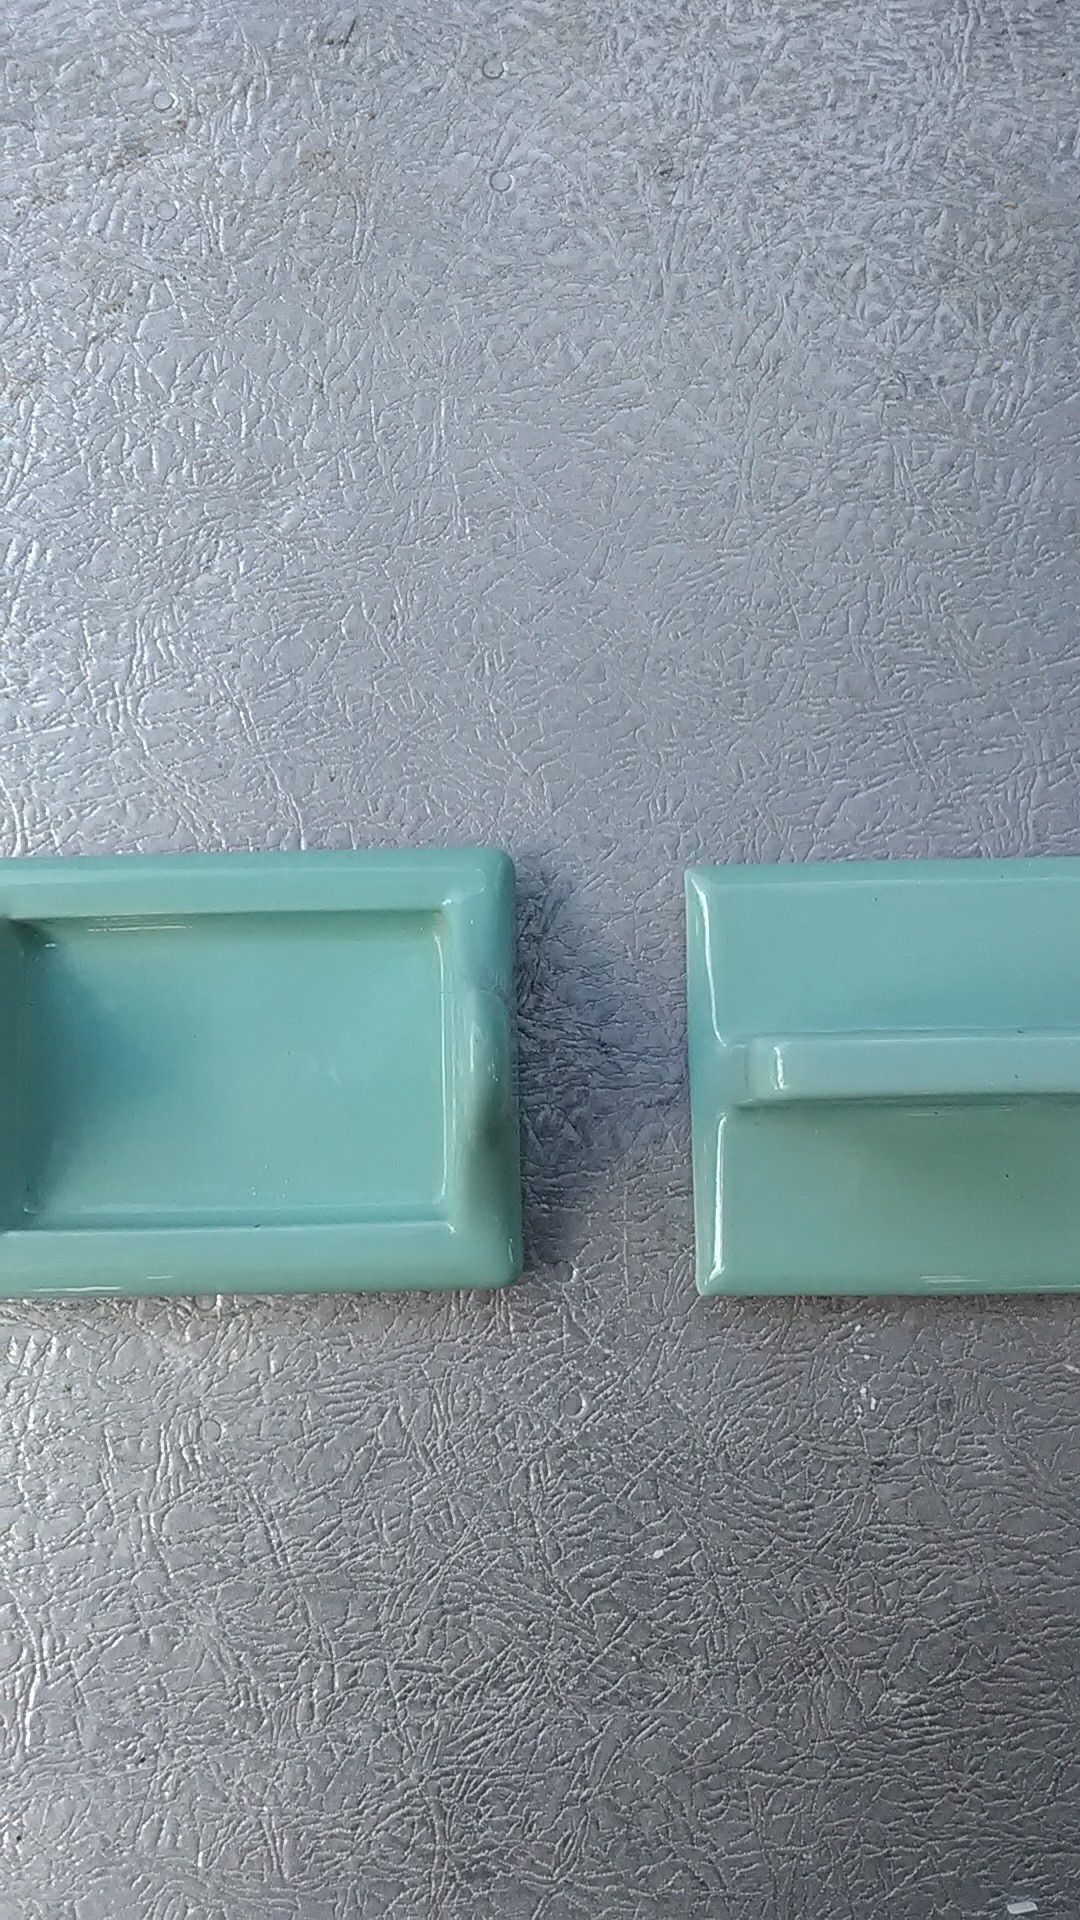 Vintage Ceramic Tile Fixtures Toothbrush/cup holder Toiletpaper holder